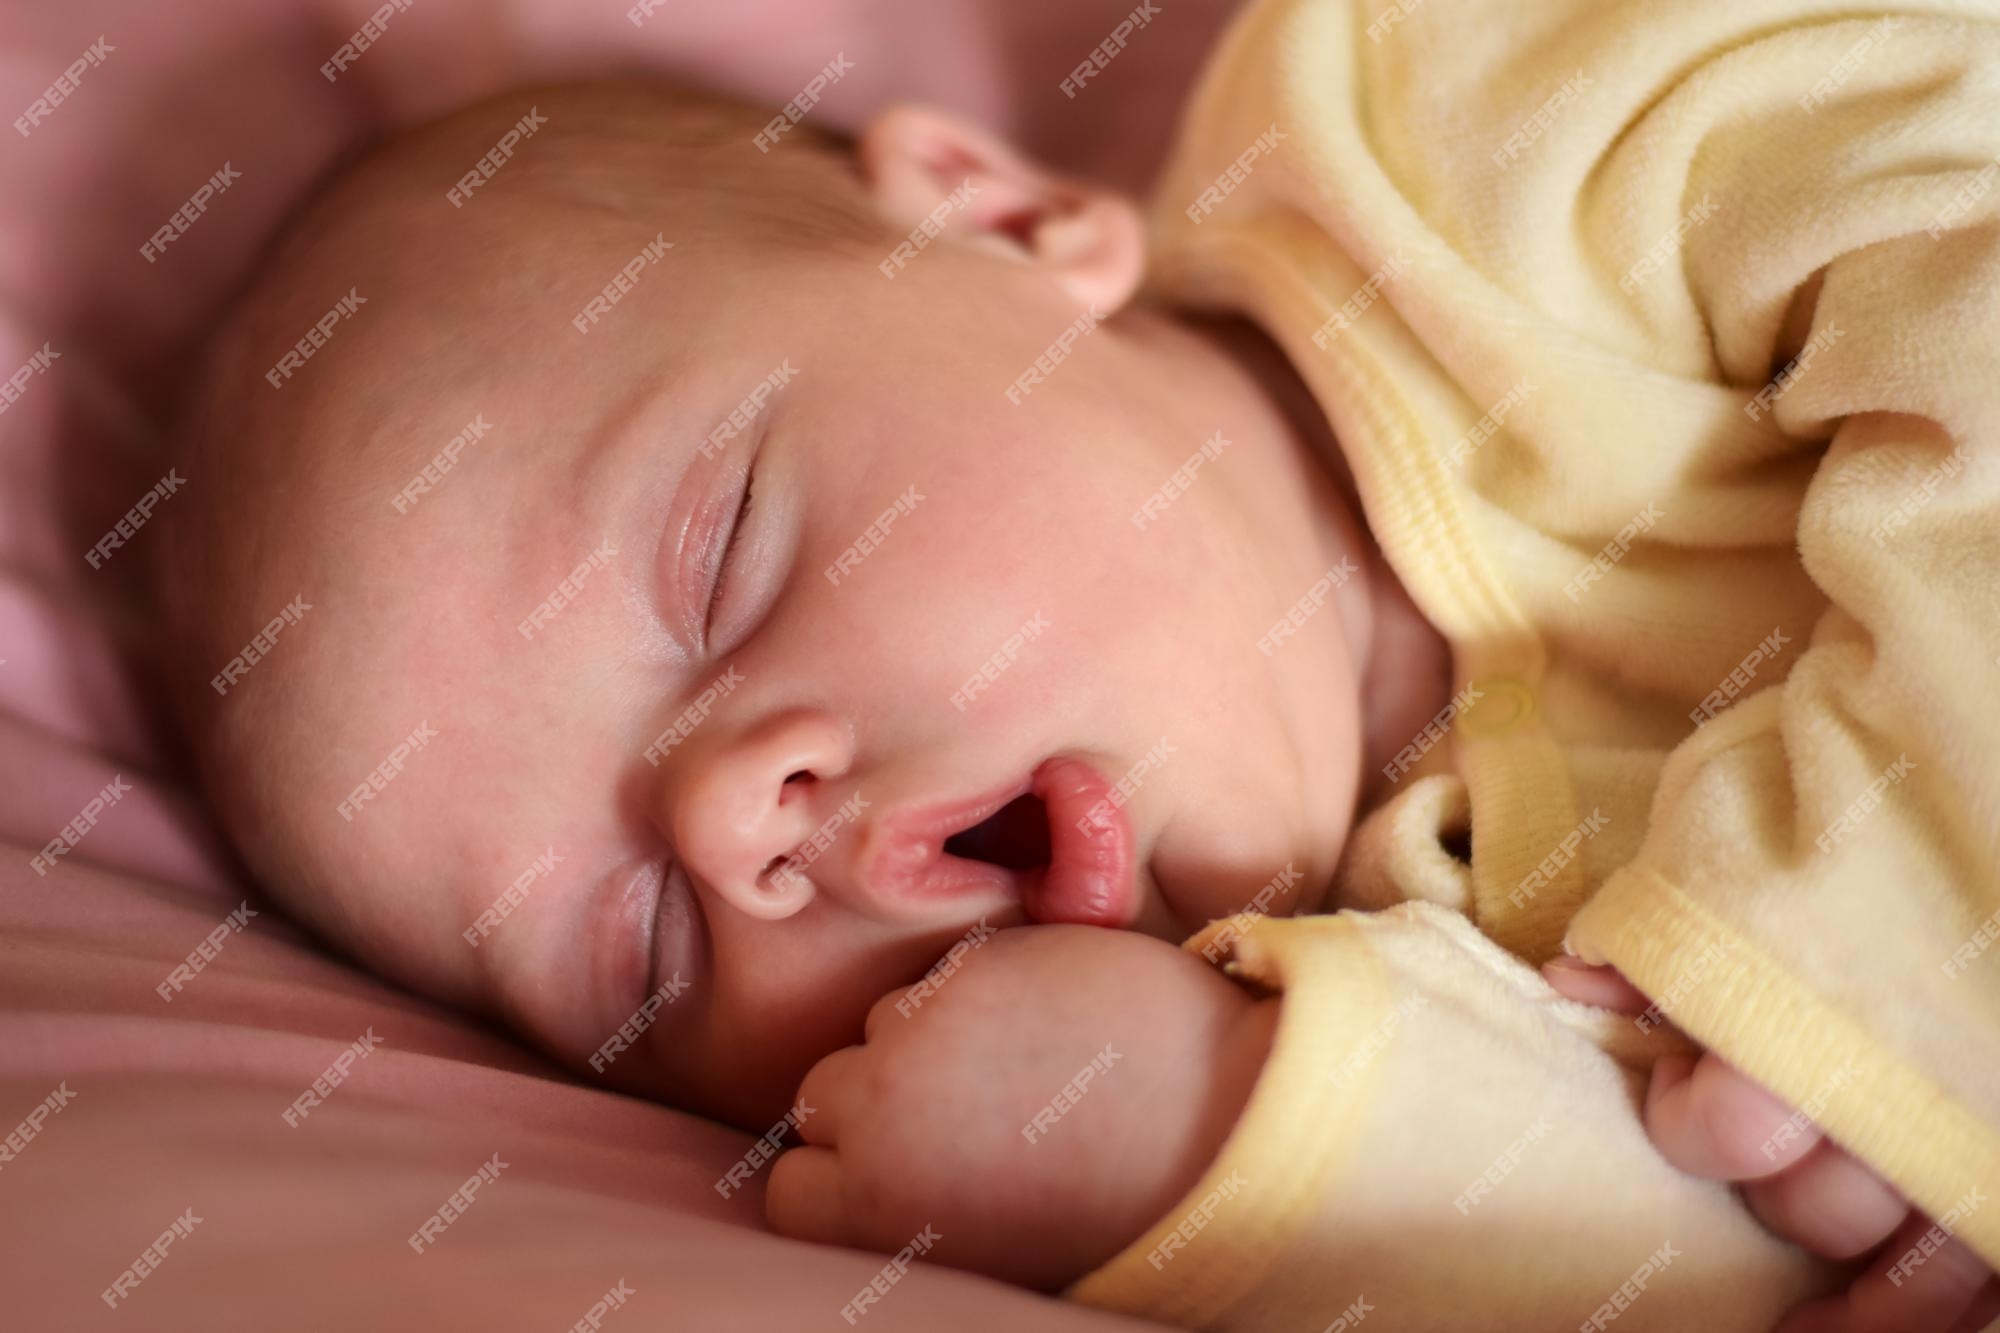 El bebé recién nacido duerme con la boca abierta. una, dos semanas de edad. pequeña durmiendo o despertándose mientras está acostada en una cama morada en casa. nueva vida y concepto